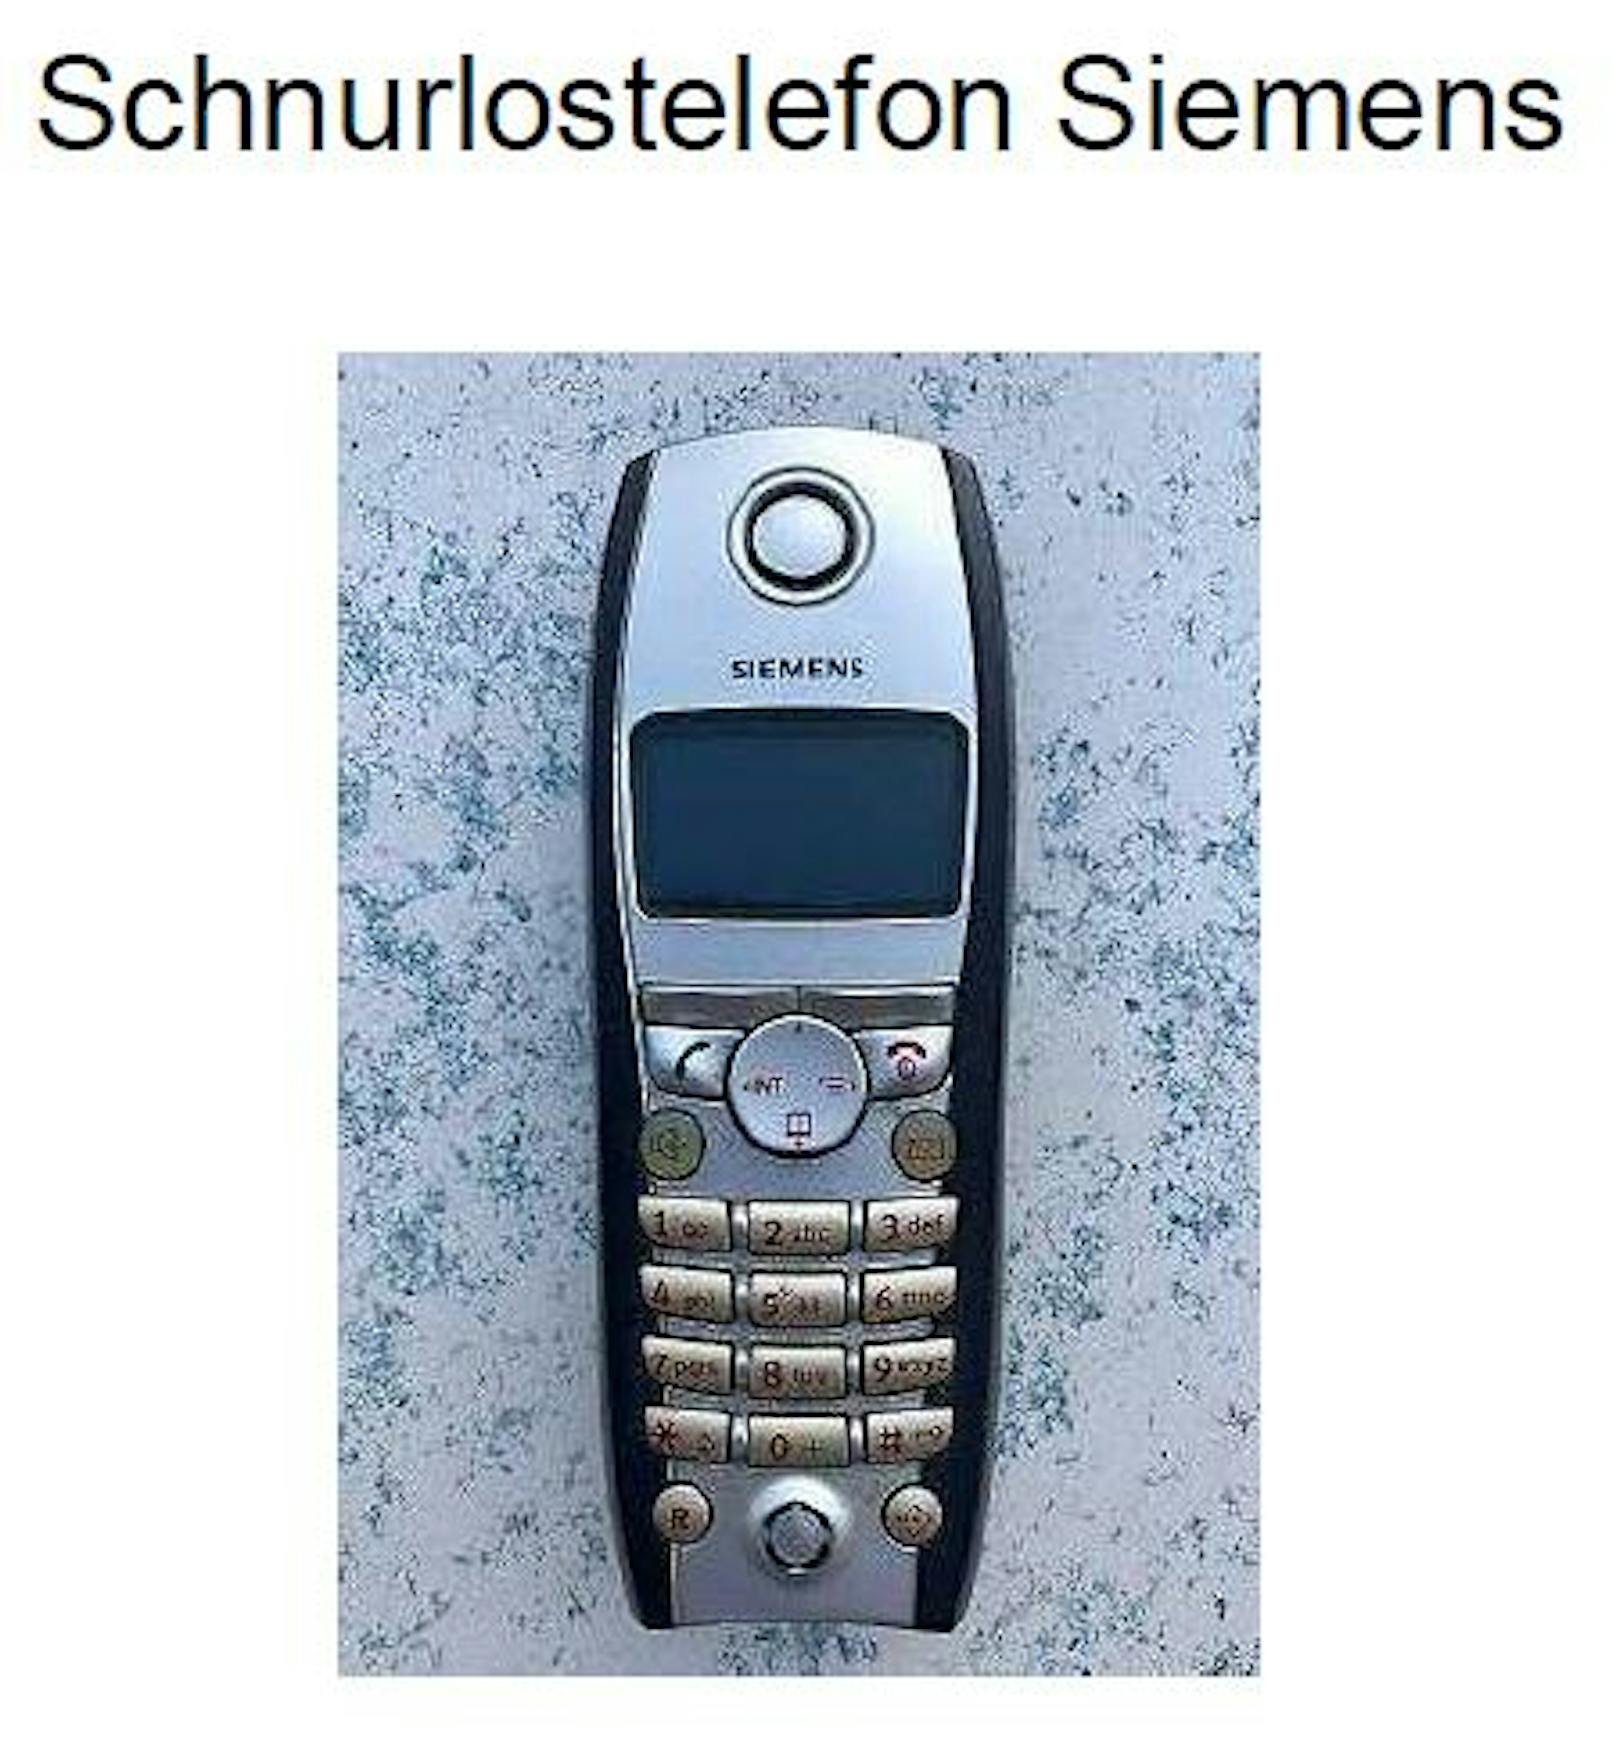 Schnurlostelefon Siemens